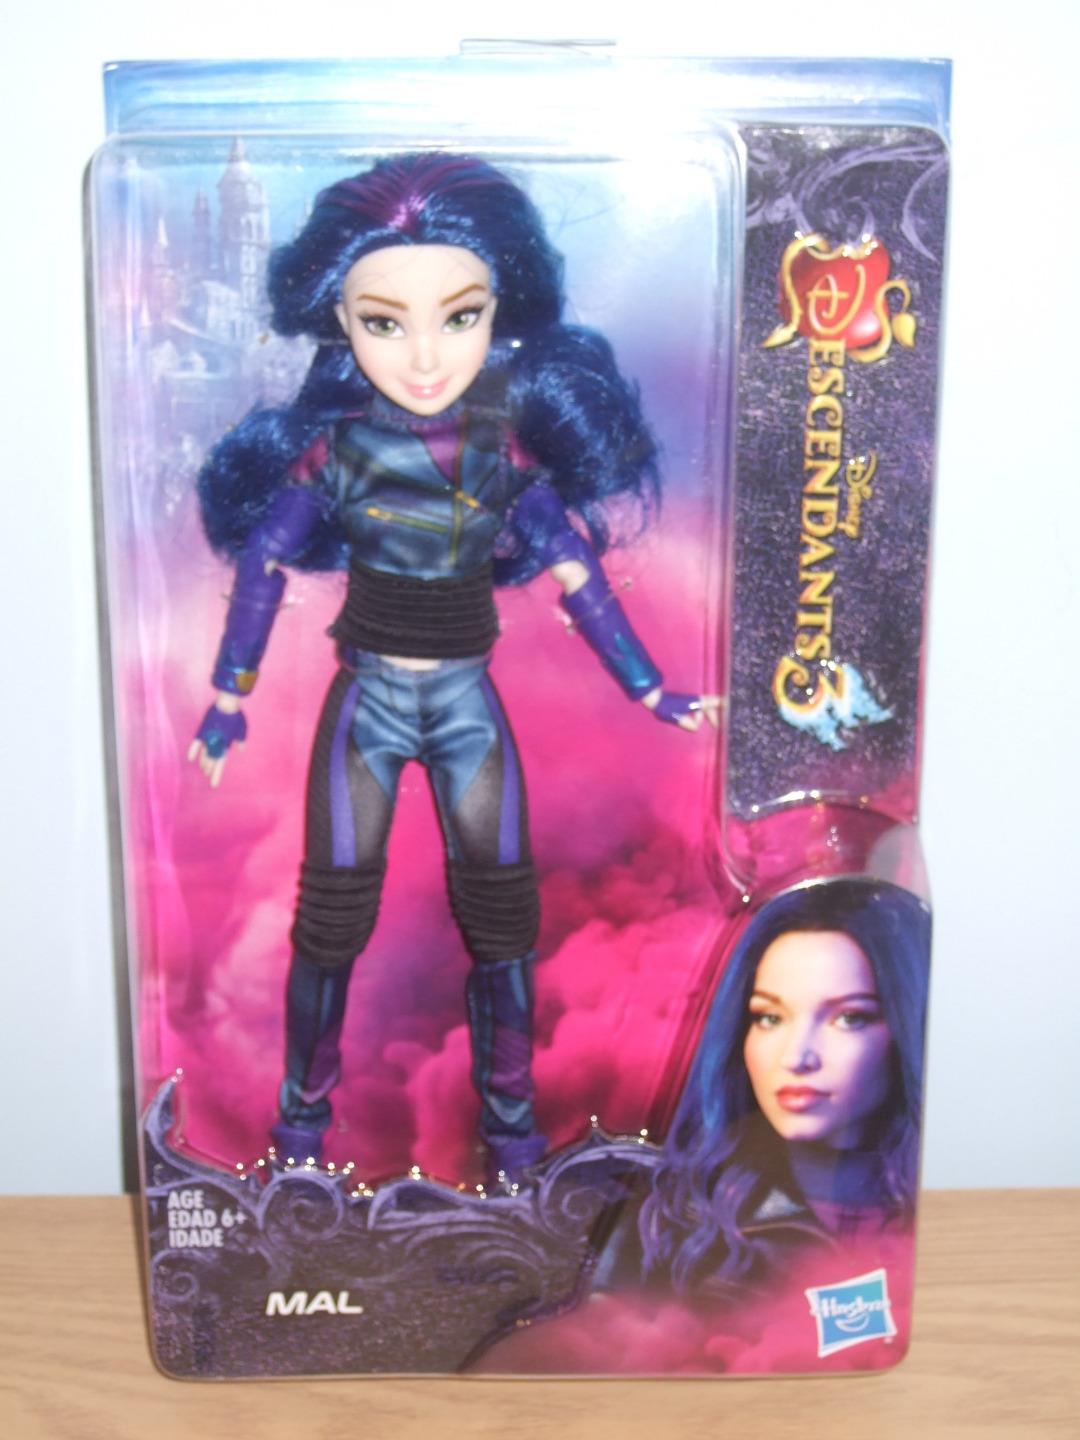 Descendants 3 Mal Doll - Brand New In Box | eBay